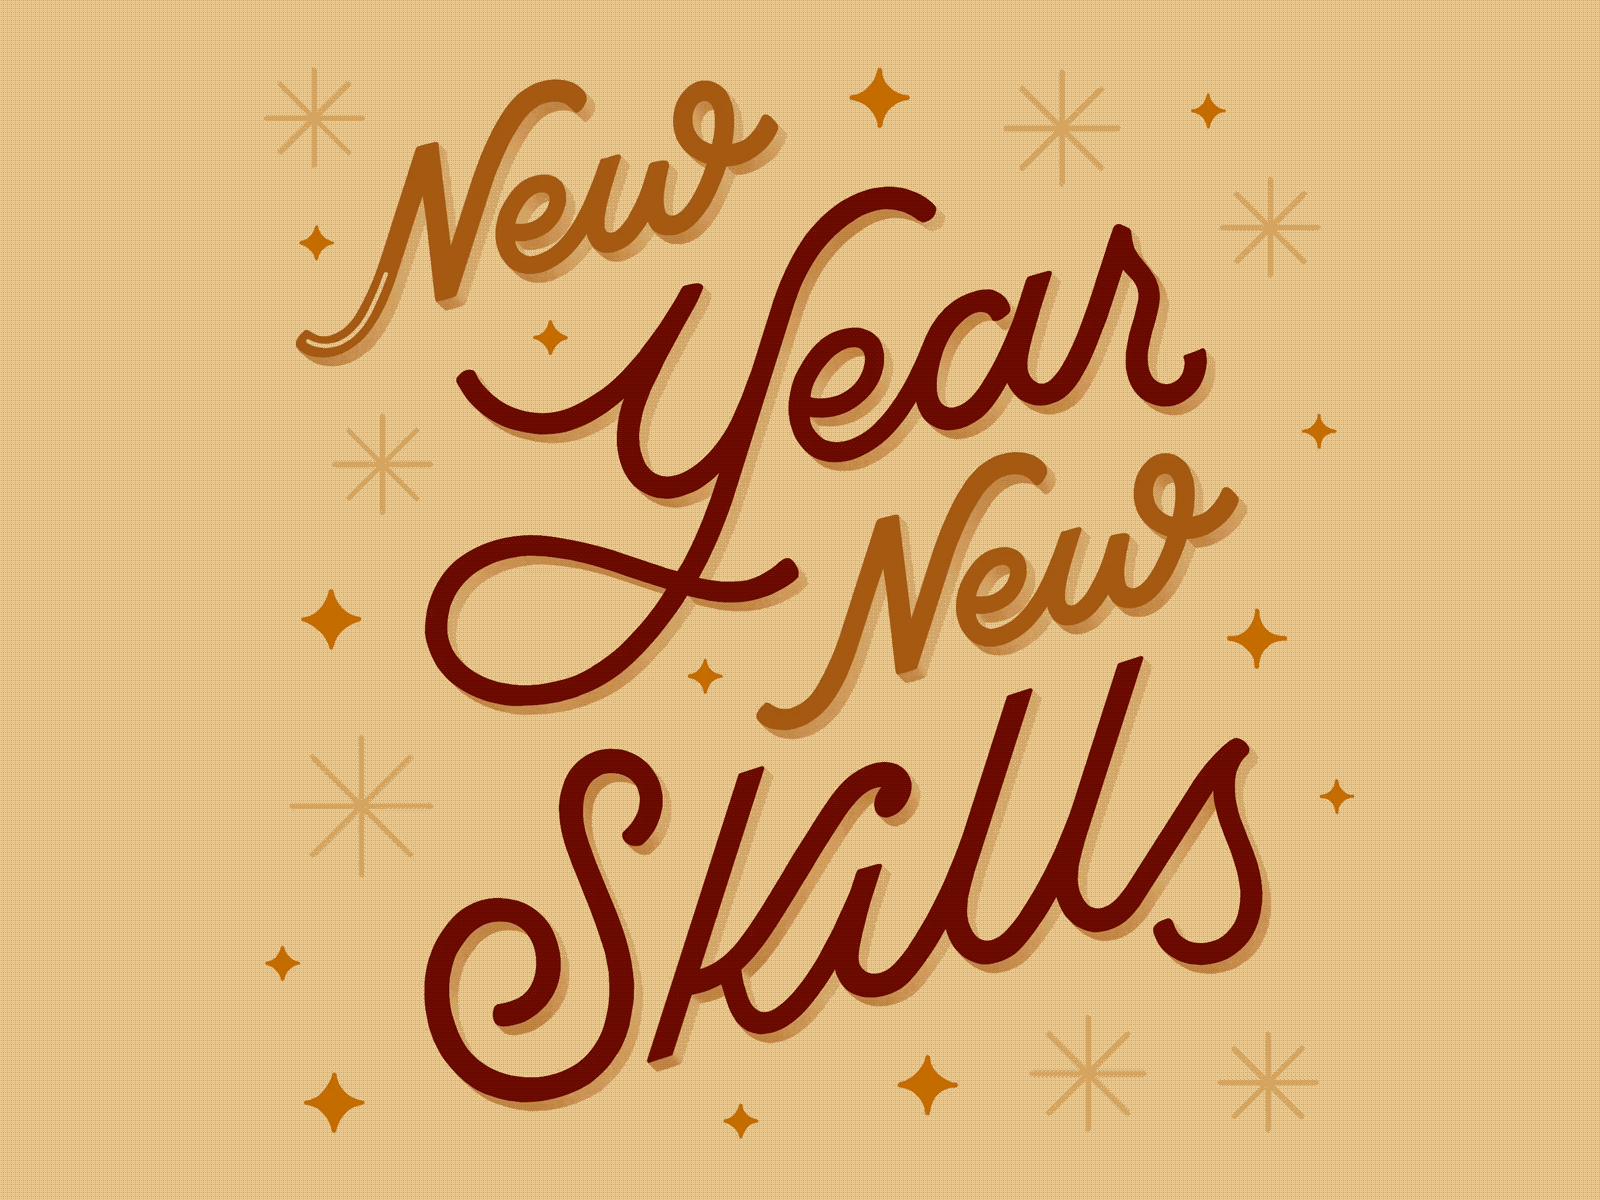 New Year New Skills